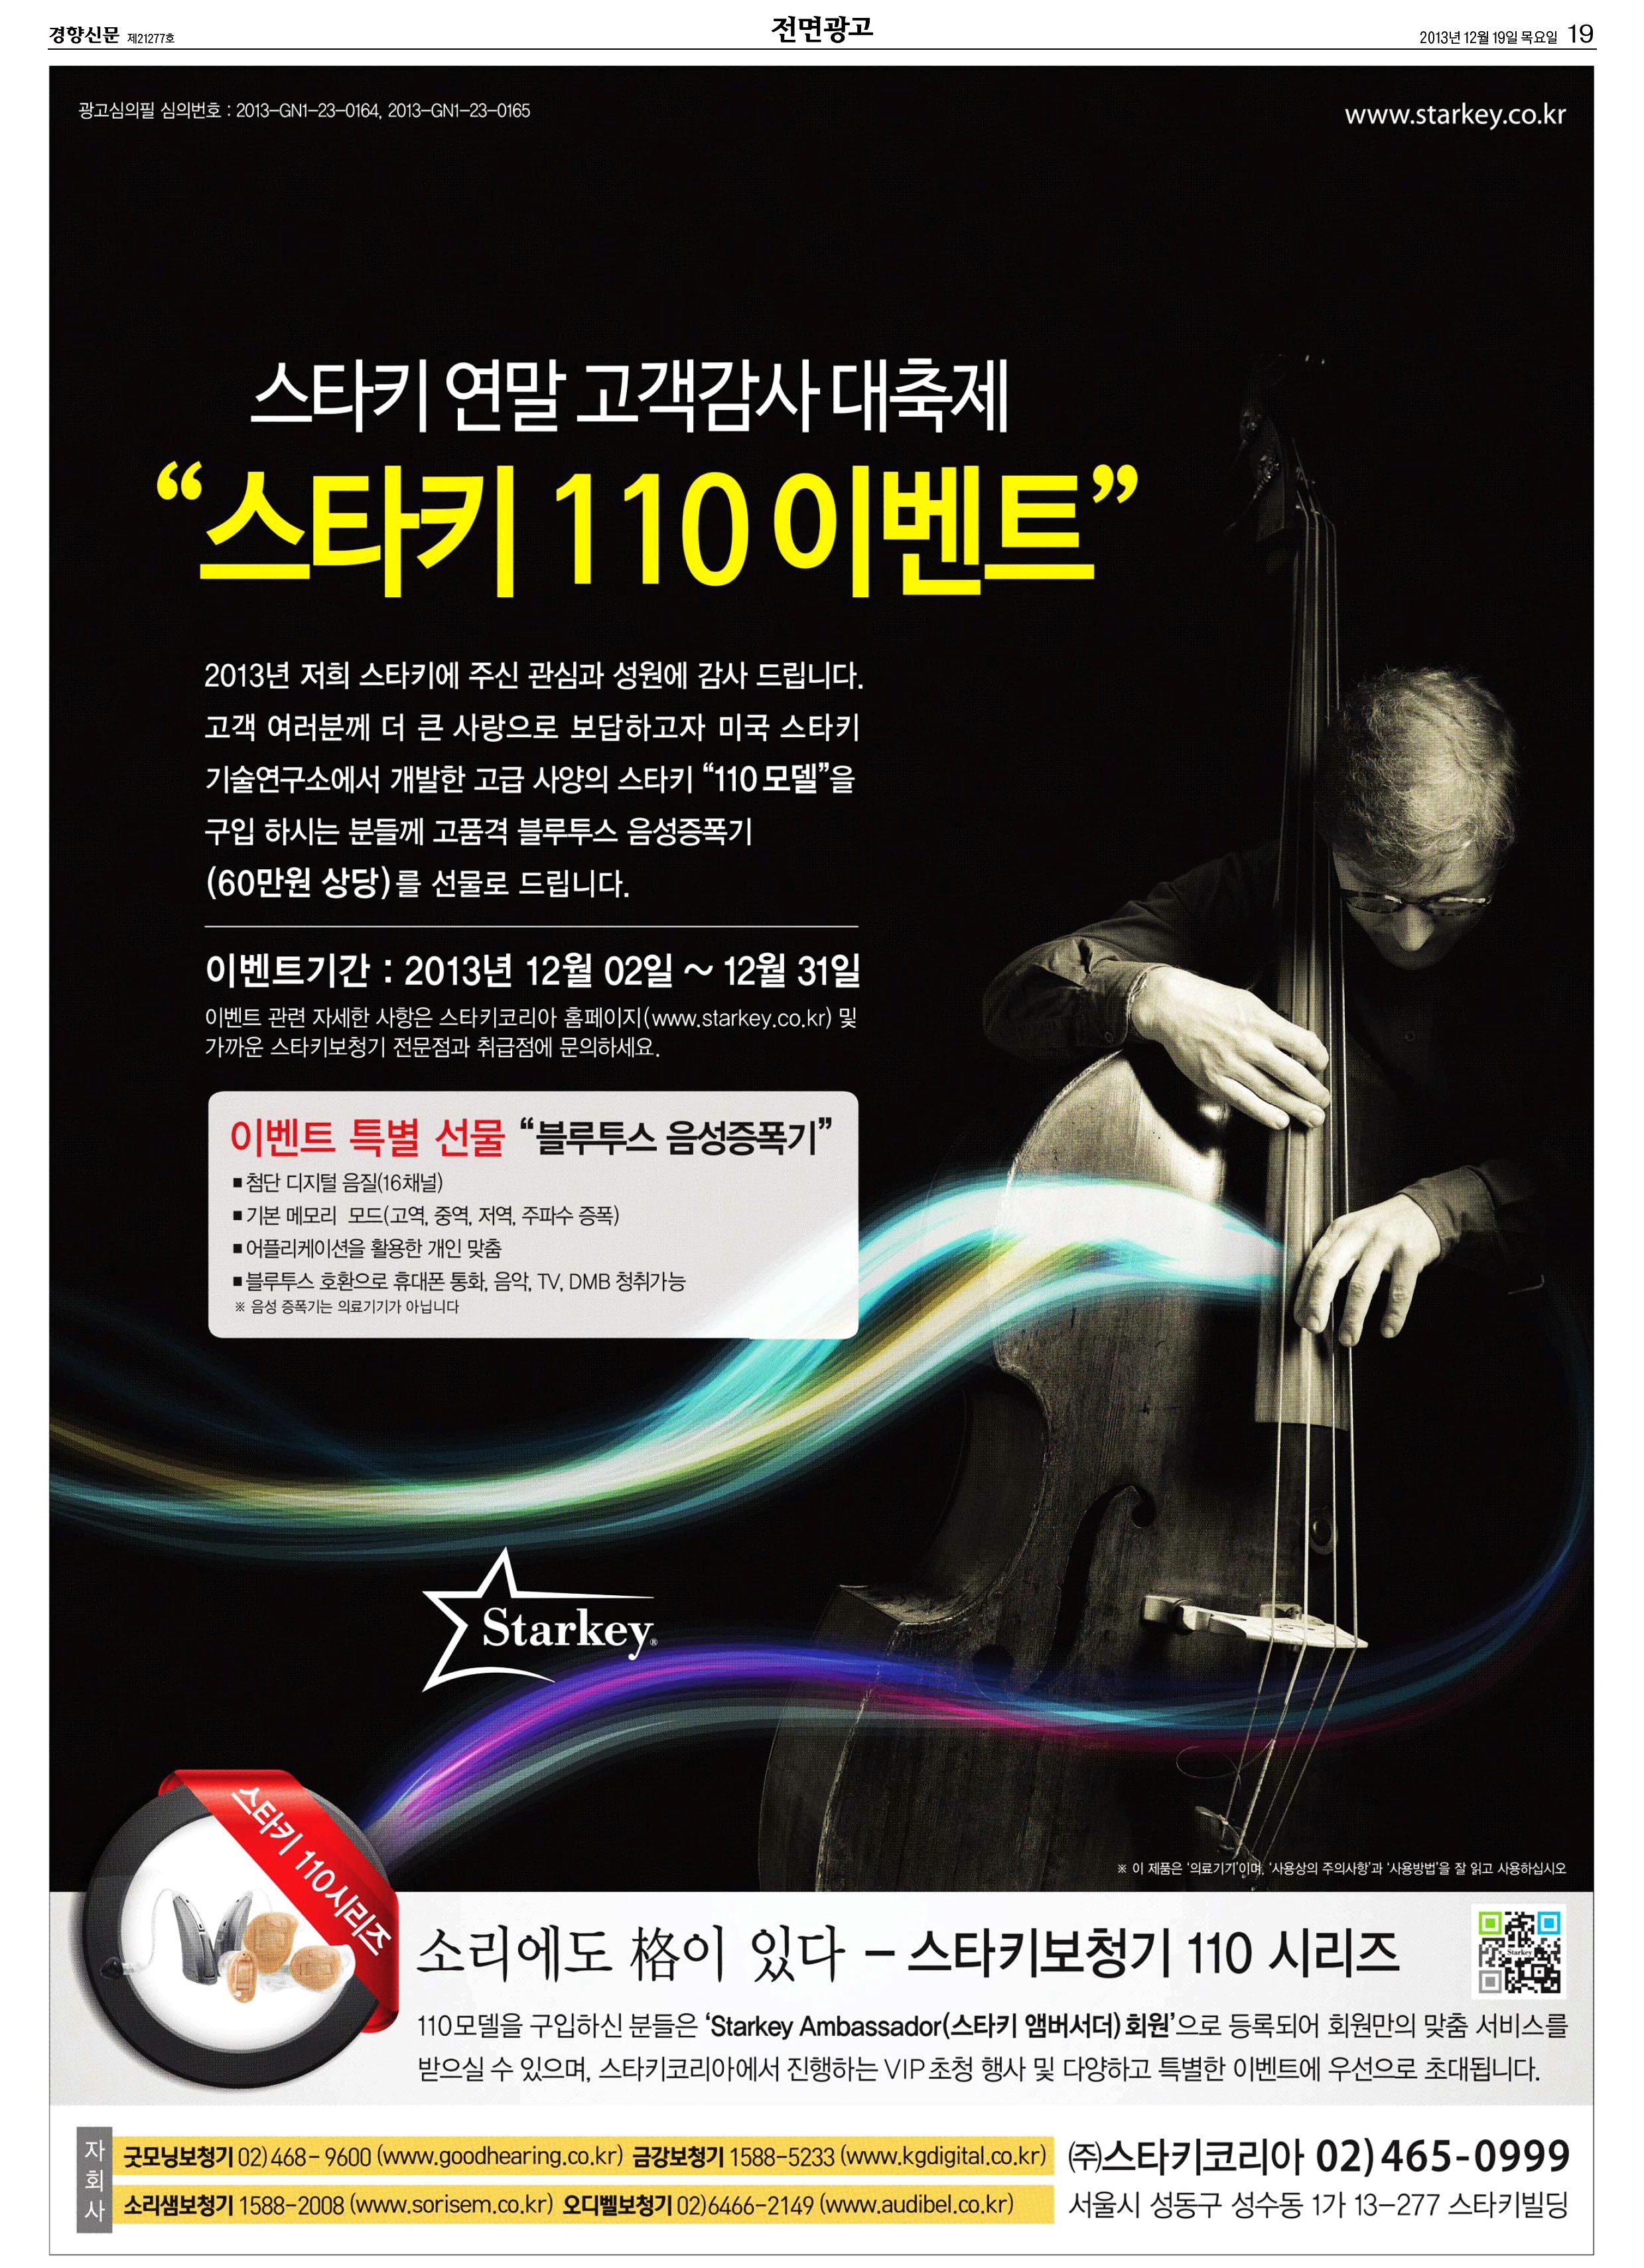 2. 2013 연말 '110 이벤트' 신문광고.jpg